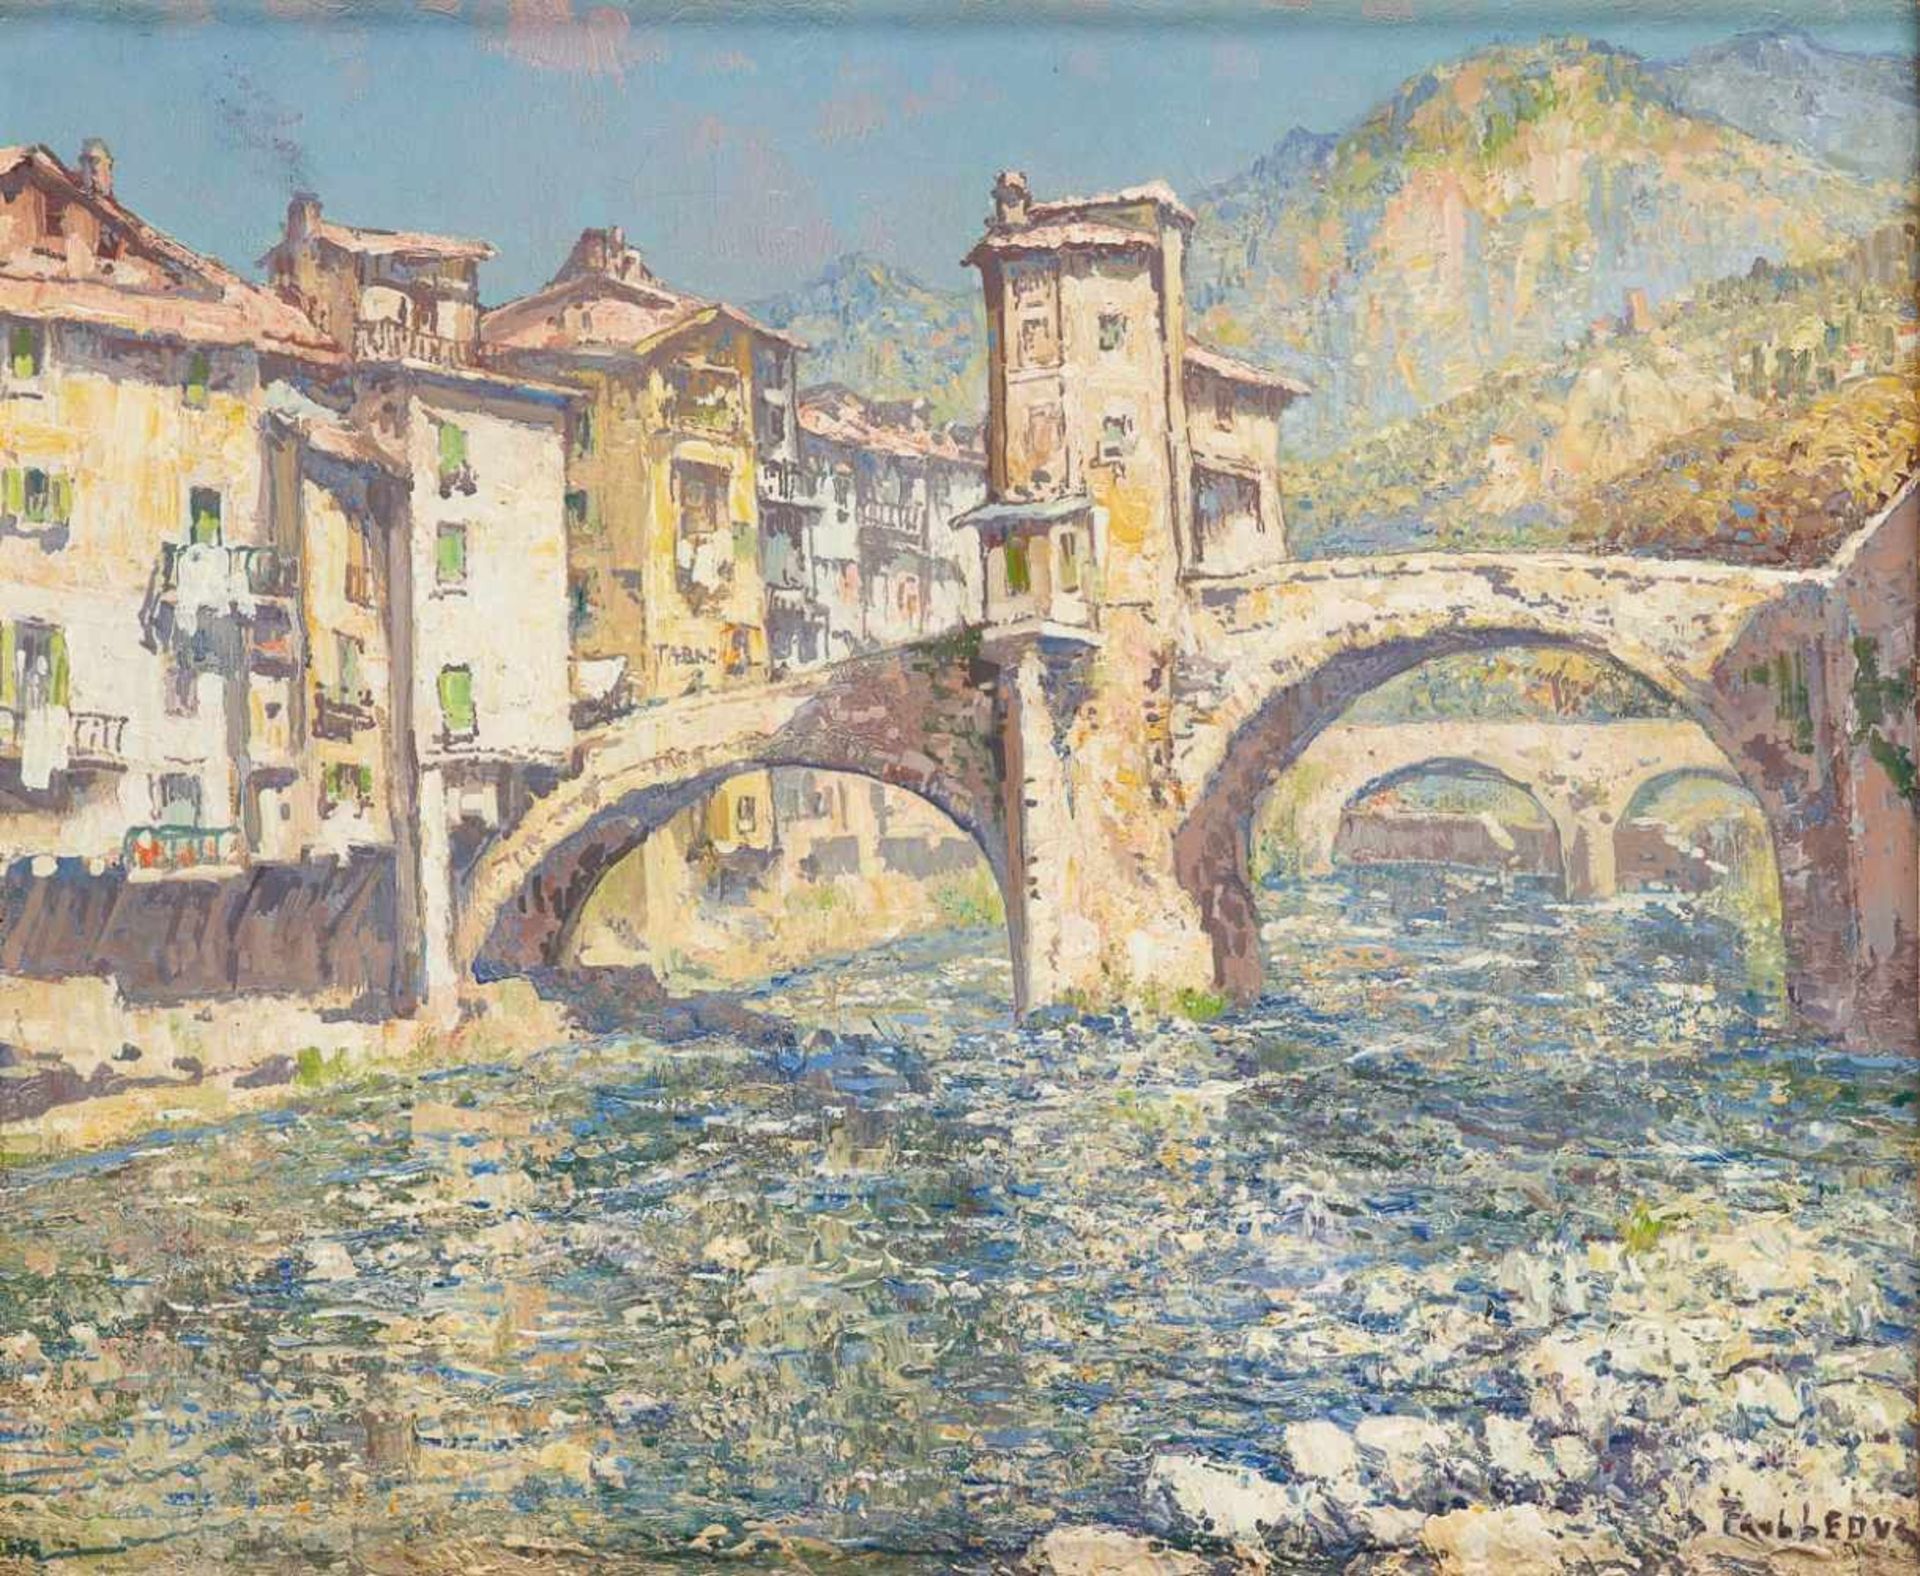 Paul LEDUC École belge (1876-1943)Huile sur toile: "Le pont de Sospel".Signée: Paul Leduc,